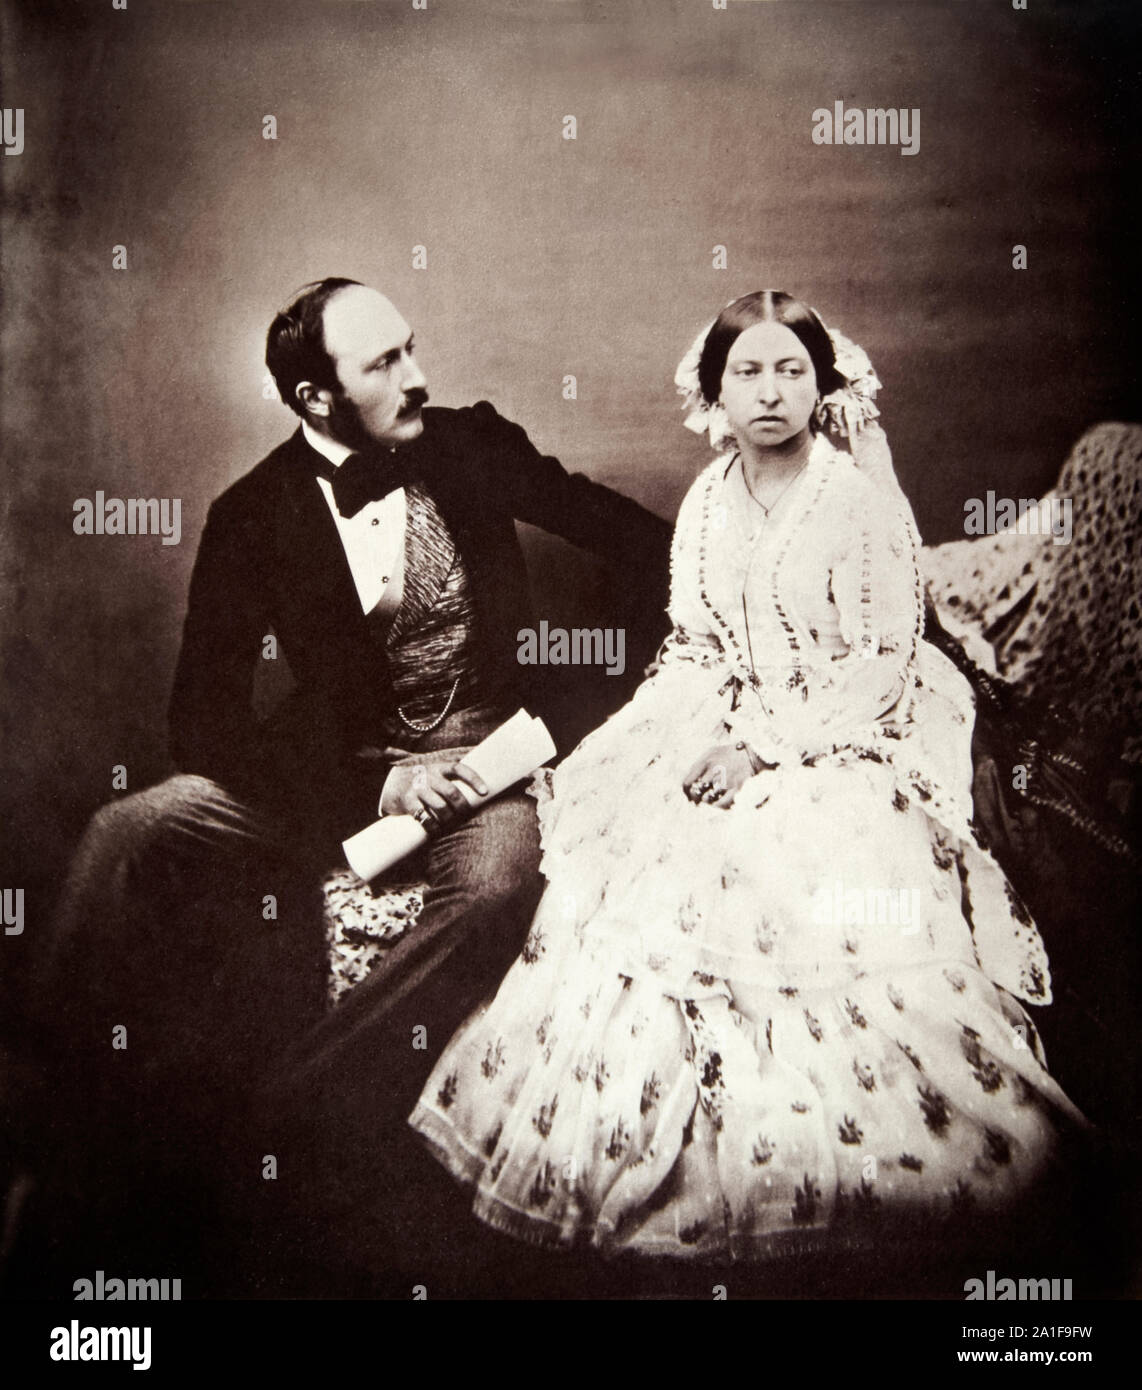 La reine Victoria (1819-1901) et Prince Albert (1819-1861), photo de Roger Felton (1819-1869) pris en 1854 à Buckingham Palace, Londres. Banque D'Images